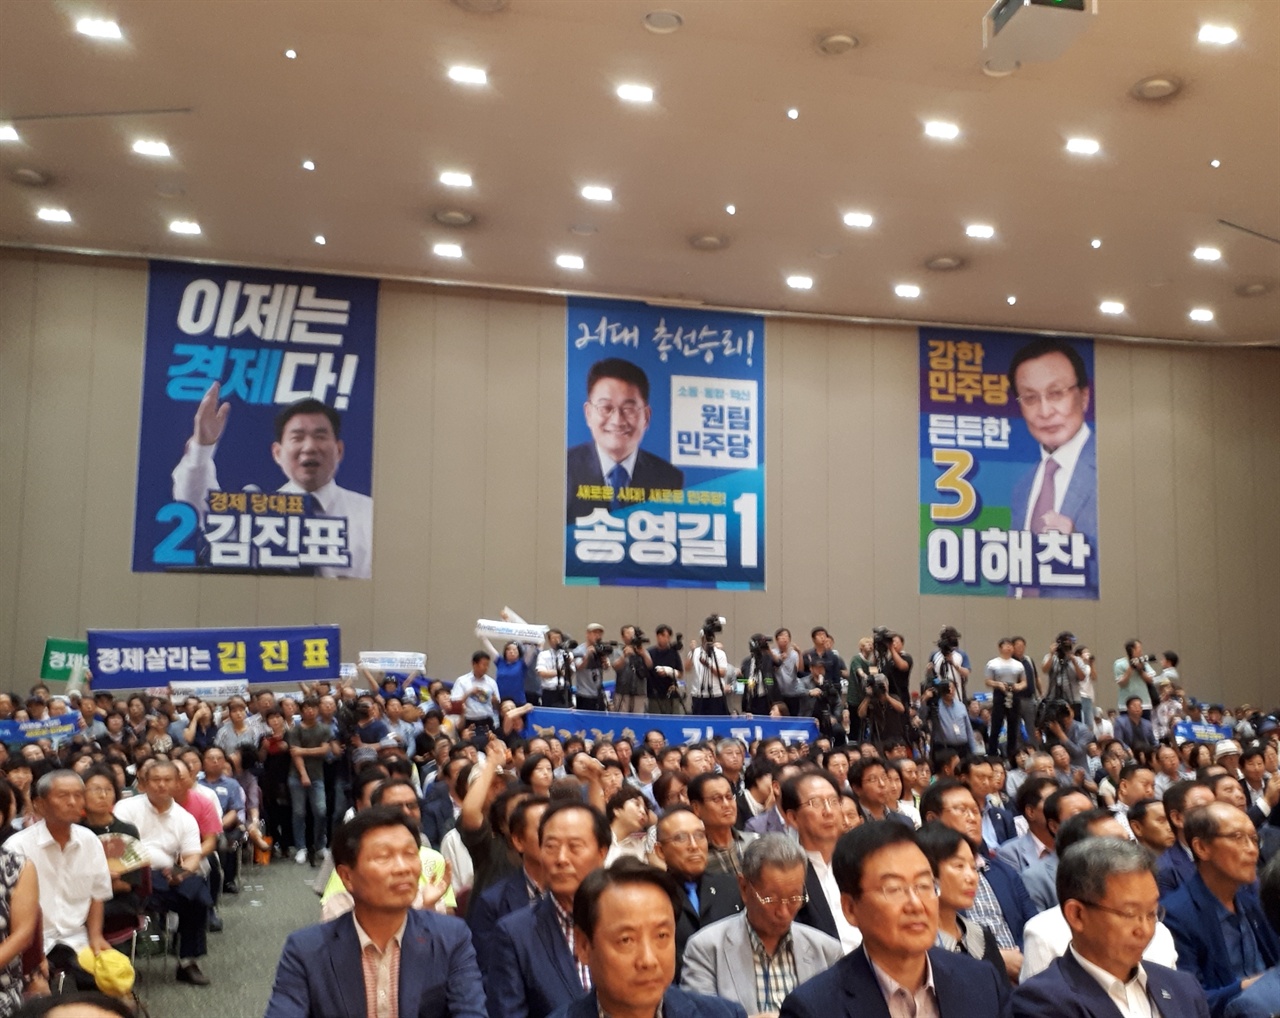 4일 광주 김대중컨벤션센터에서 열린 민주당 전당대회에 참석한 이들의 모습이다. 벽면에 당 대표 후보자 세 명의 포스터가 부착되어 있다.